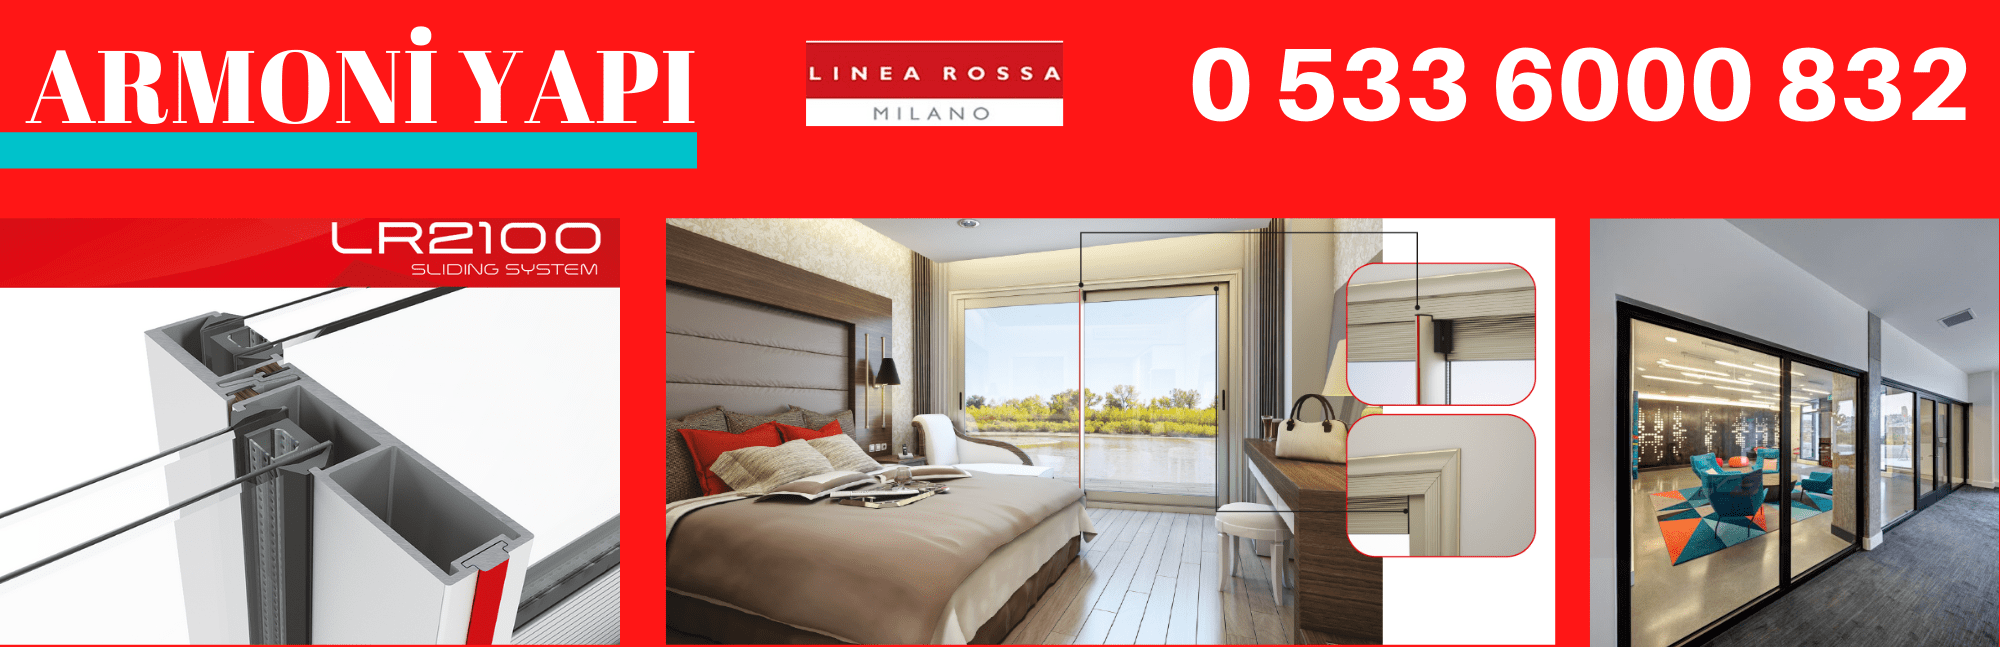 Linea Rossa LR2100 yalıtımsız sürme kapı pencere